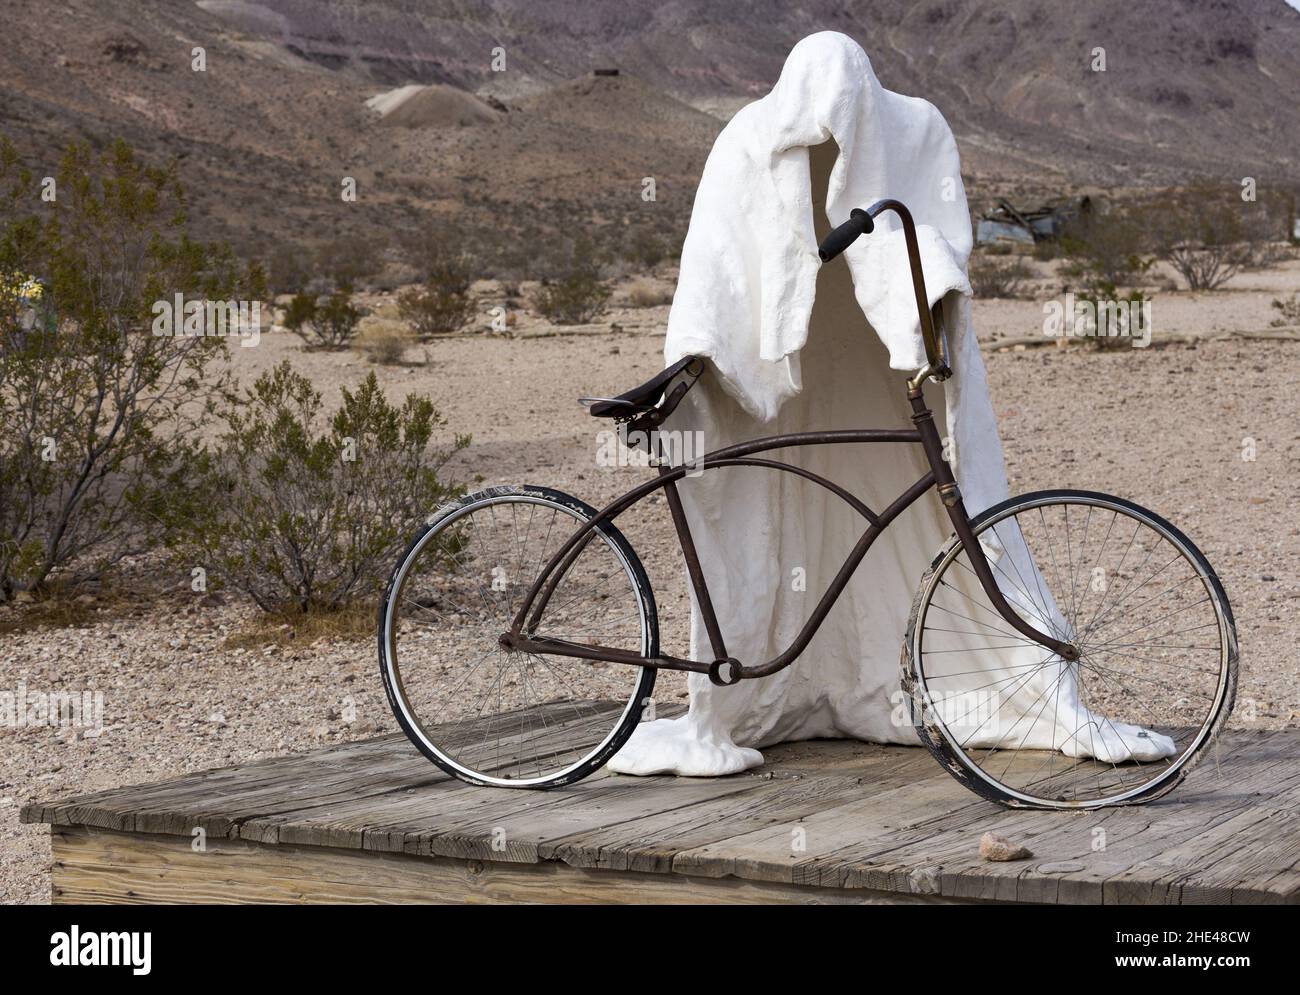 Scultura fantasma con bicicletta. Arte pubblica dello scultore belga Albert Szukalski al museo all'aperto Rhyolite Nevada Ghost Town Goldwell Foto Stock